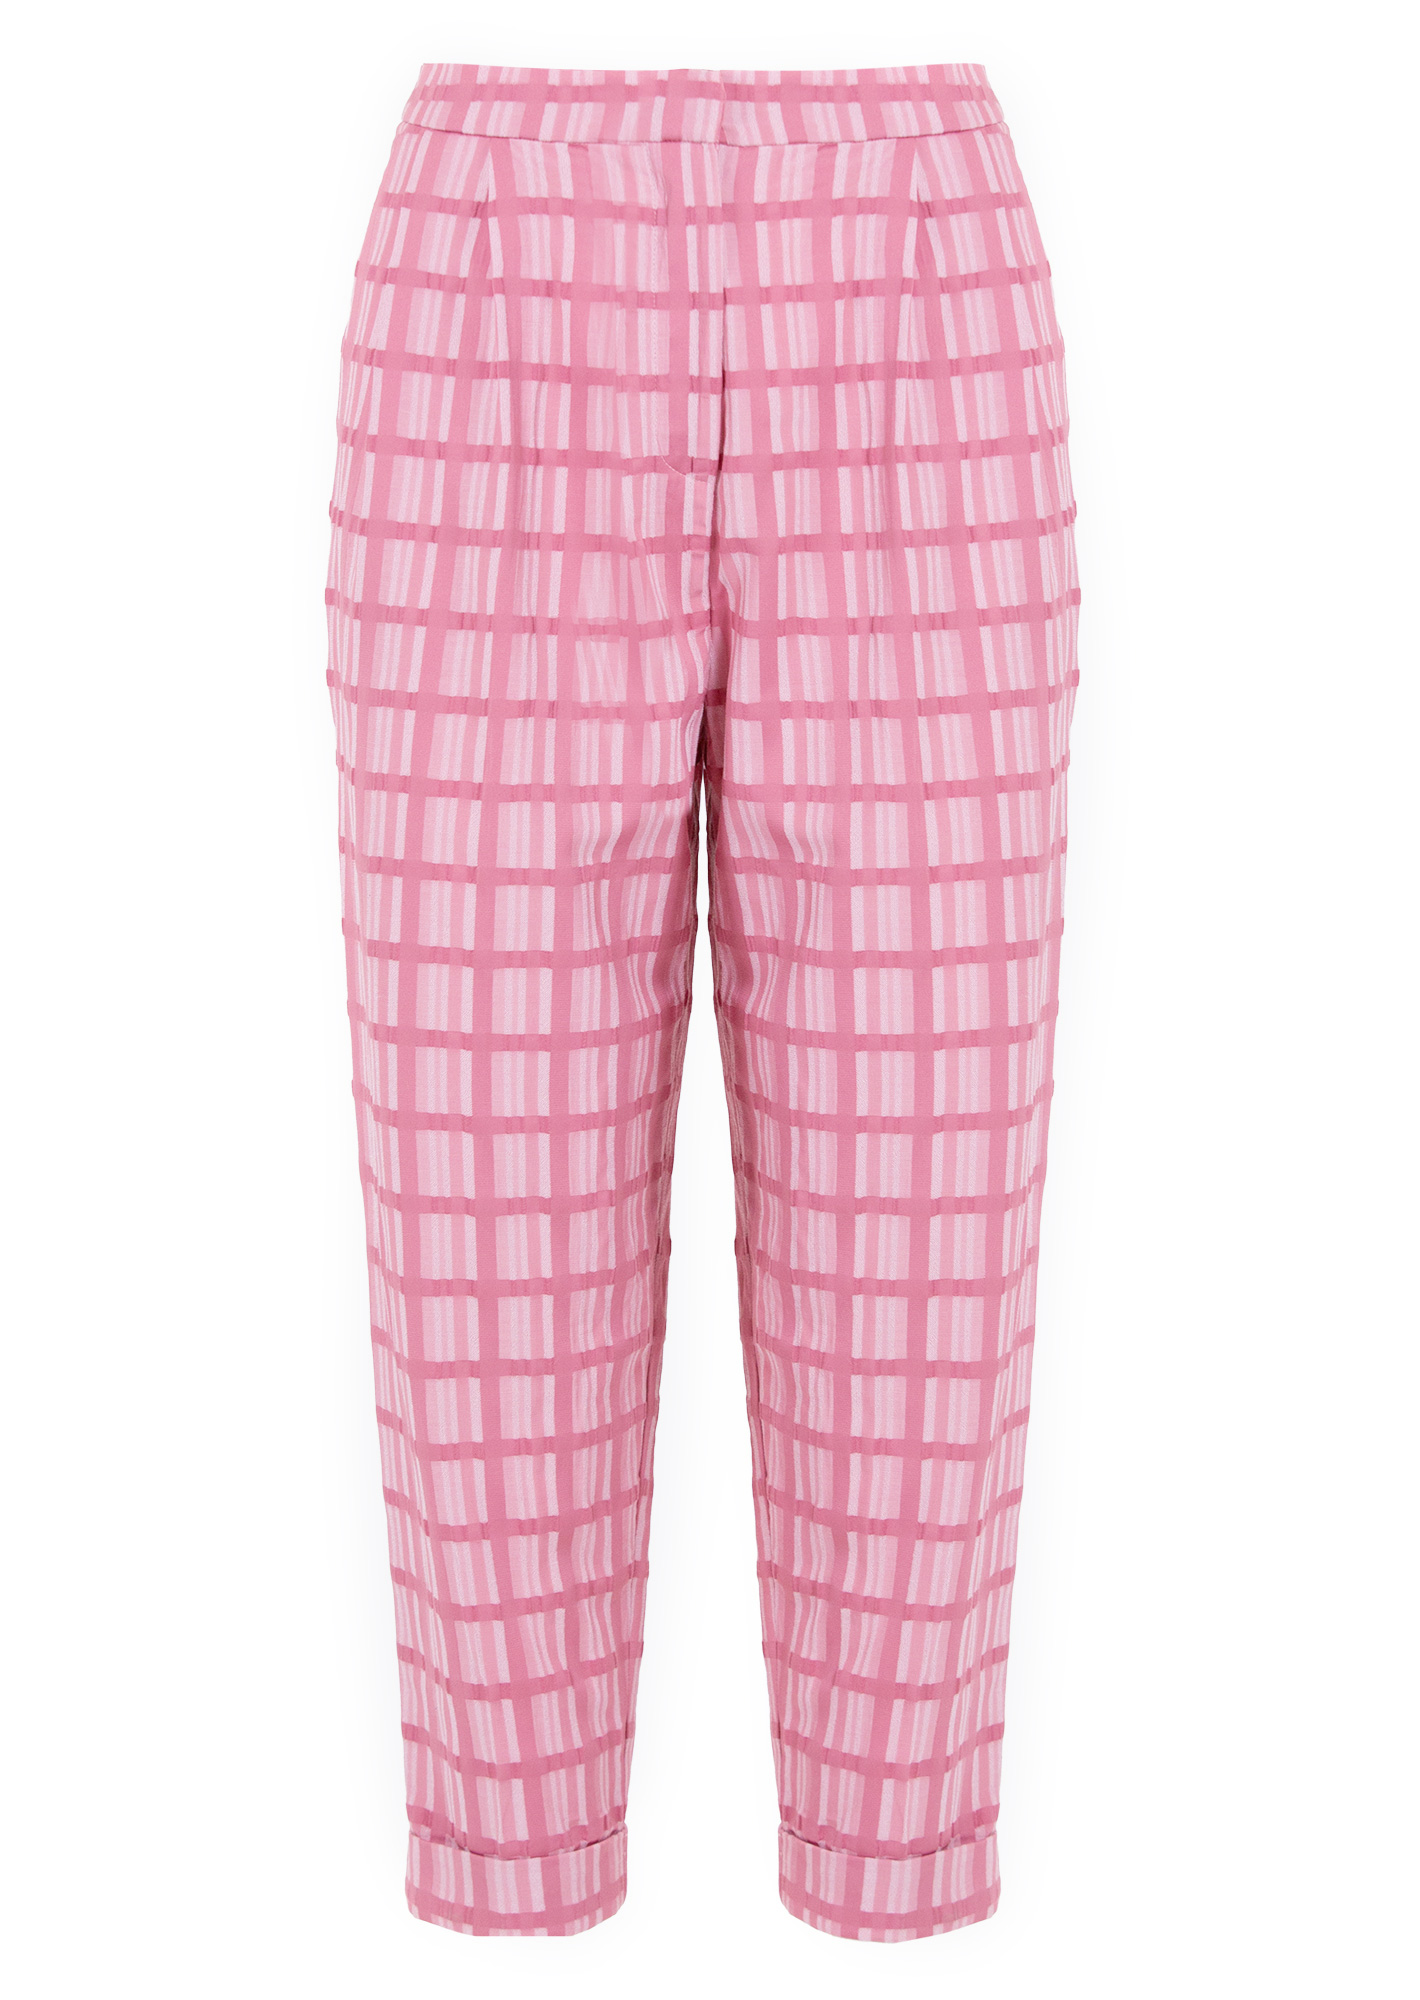 SELMACILEK Pink Plaid Pants | THE-PRIVATE-LABEL.COM